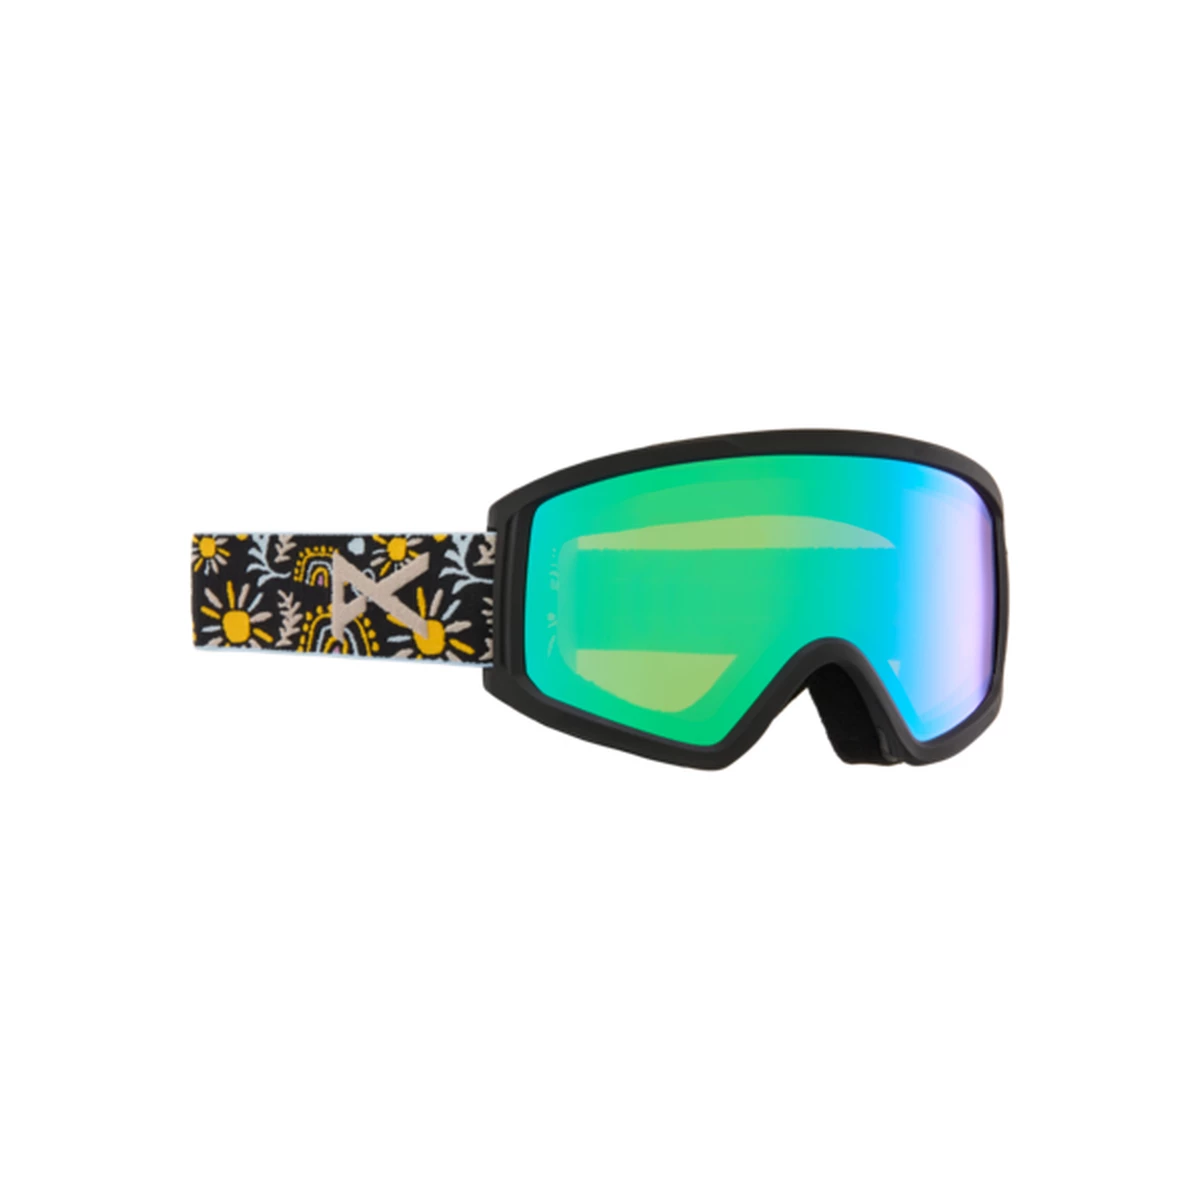 2.0 Skibril - Goggles - Accessoires - Intersport van den Broek / Biggelaar